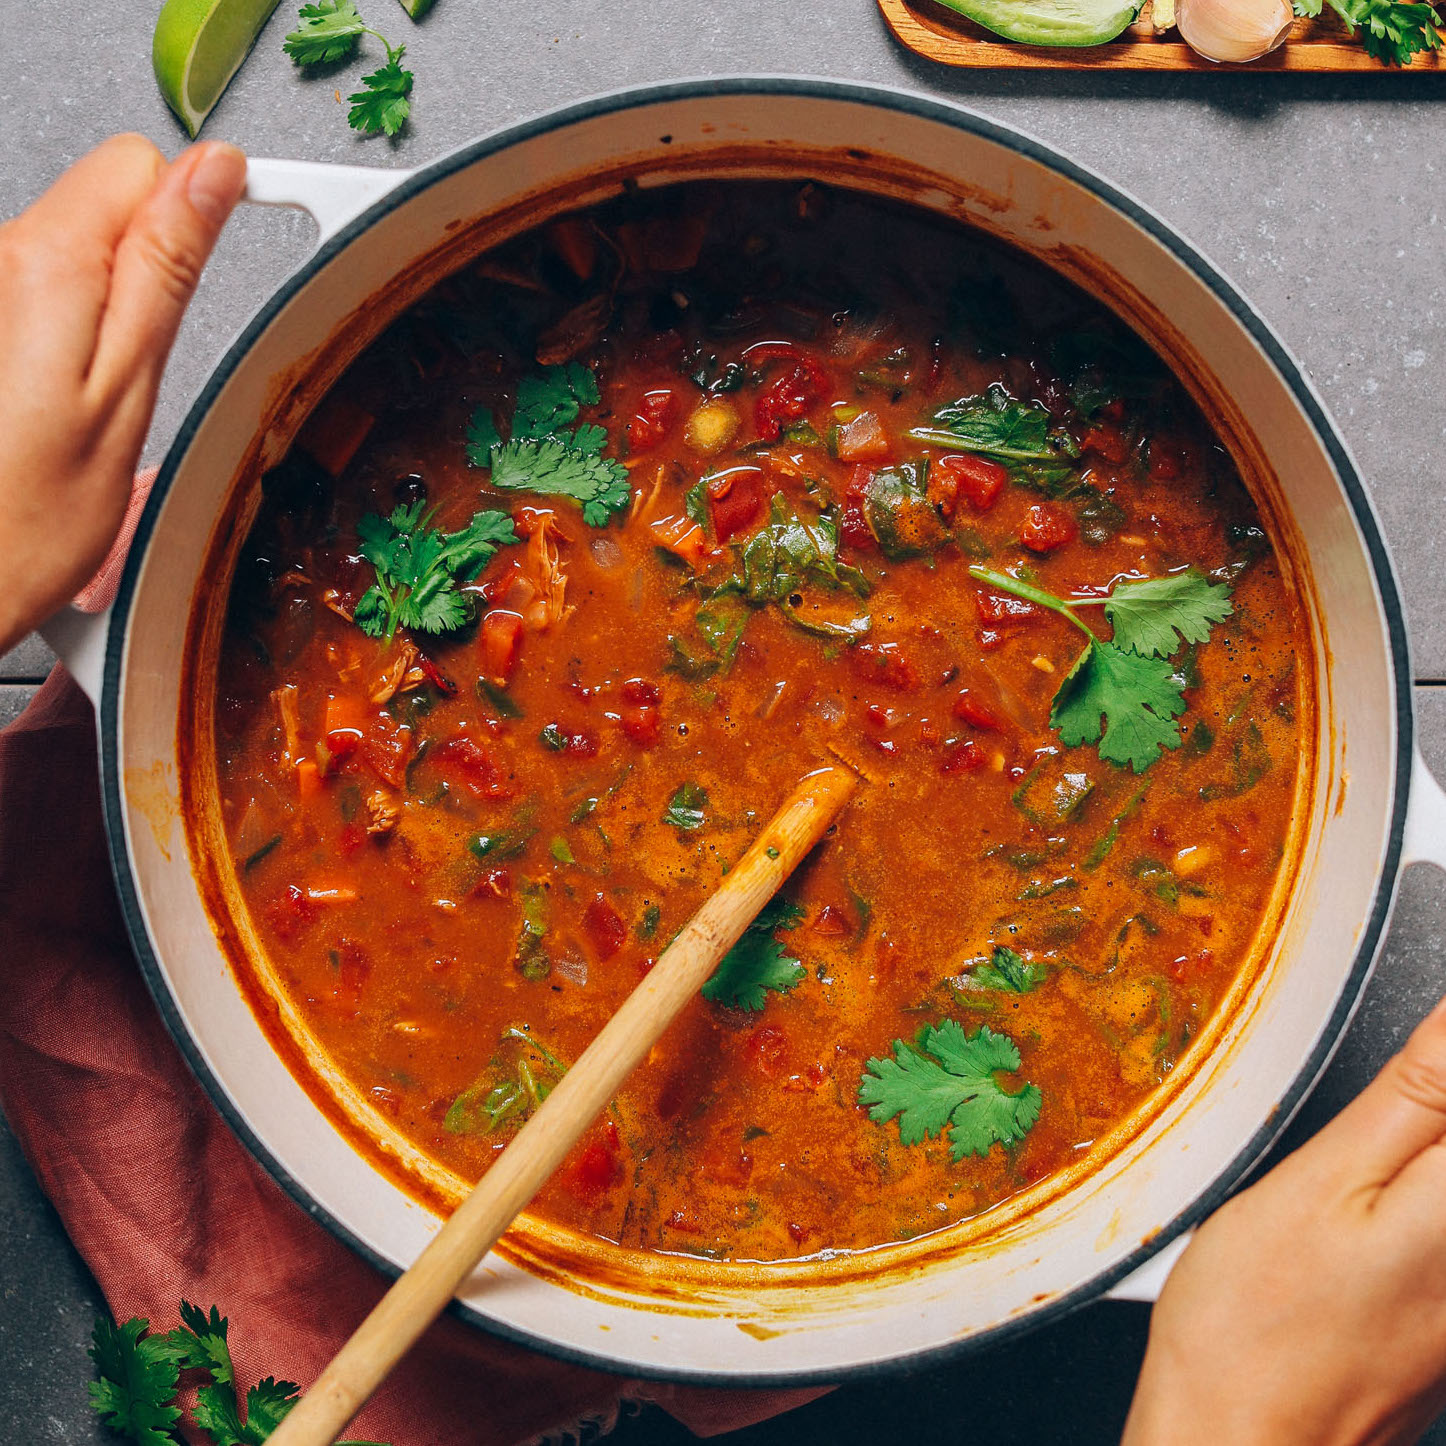 Велика каструля для супу, наповнена нашим рецептом чилі з гарбуза та чорної квасолі